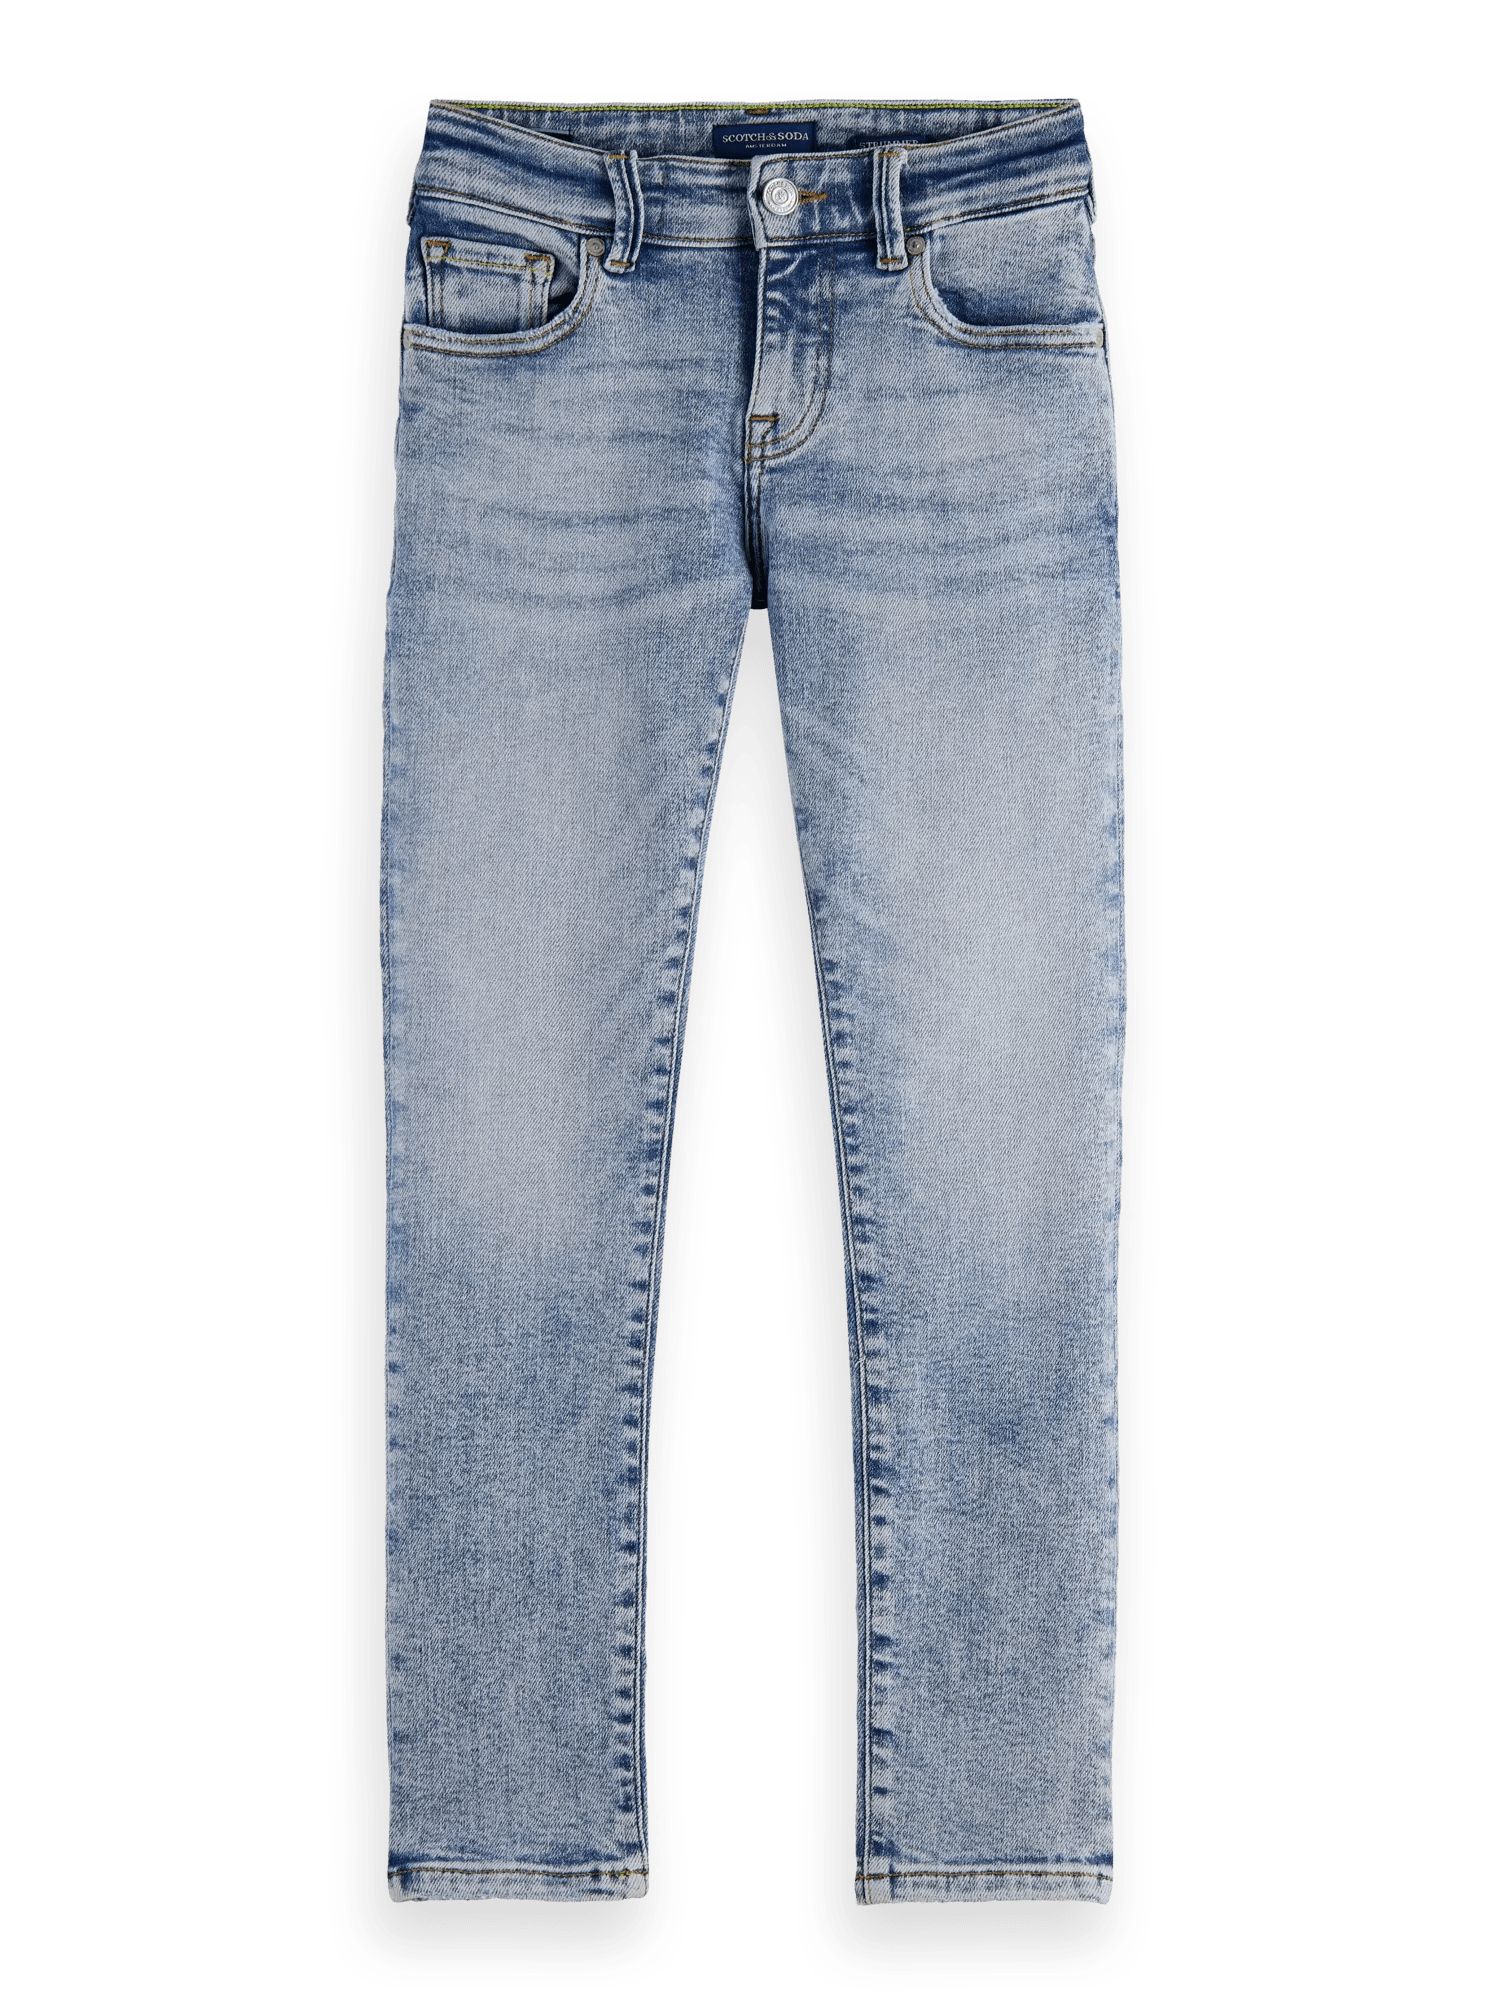 Scotch & Soda Strummer slim fit jeans — Daylight FNT